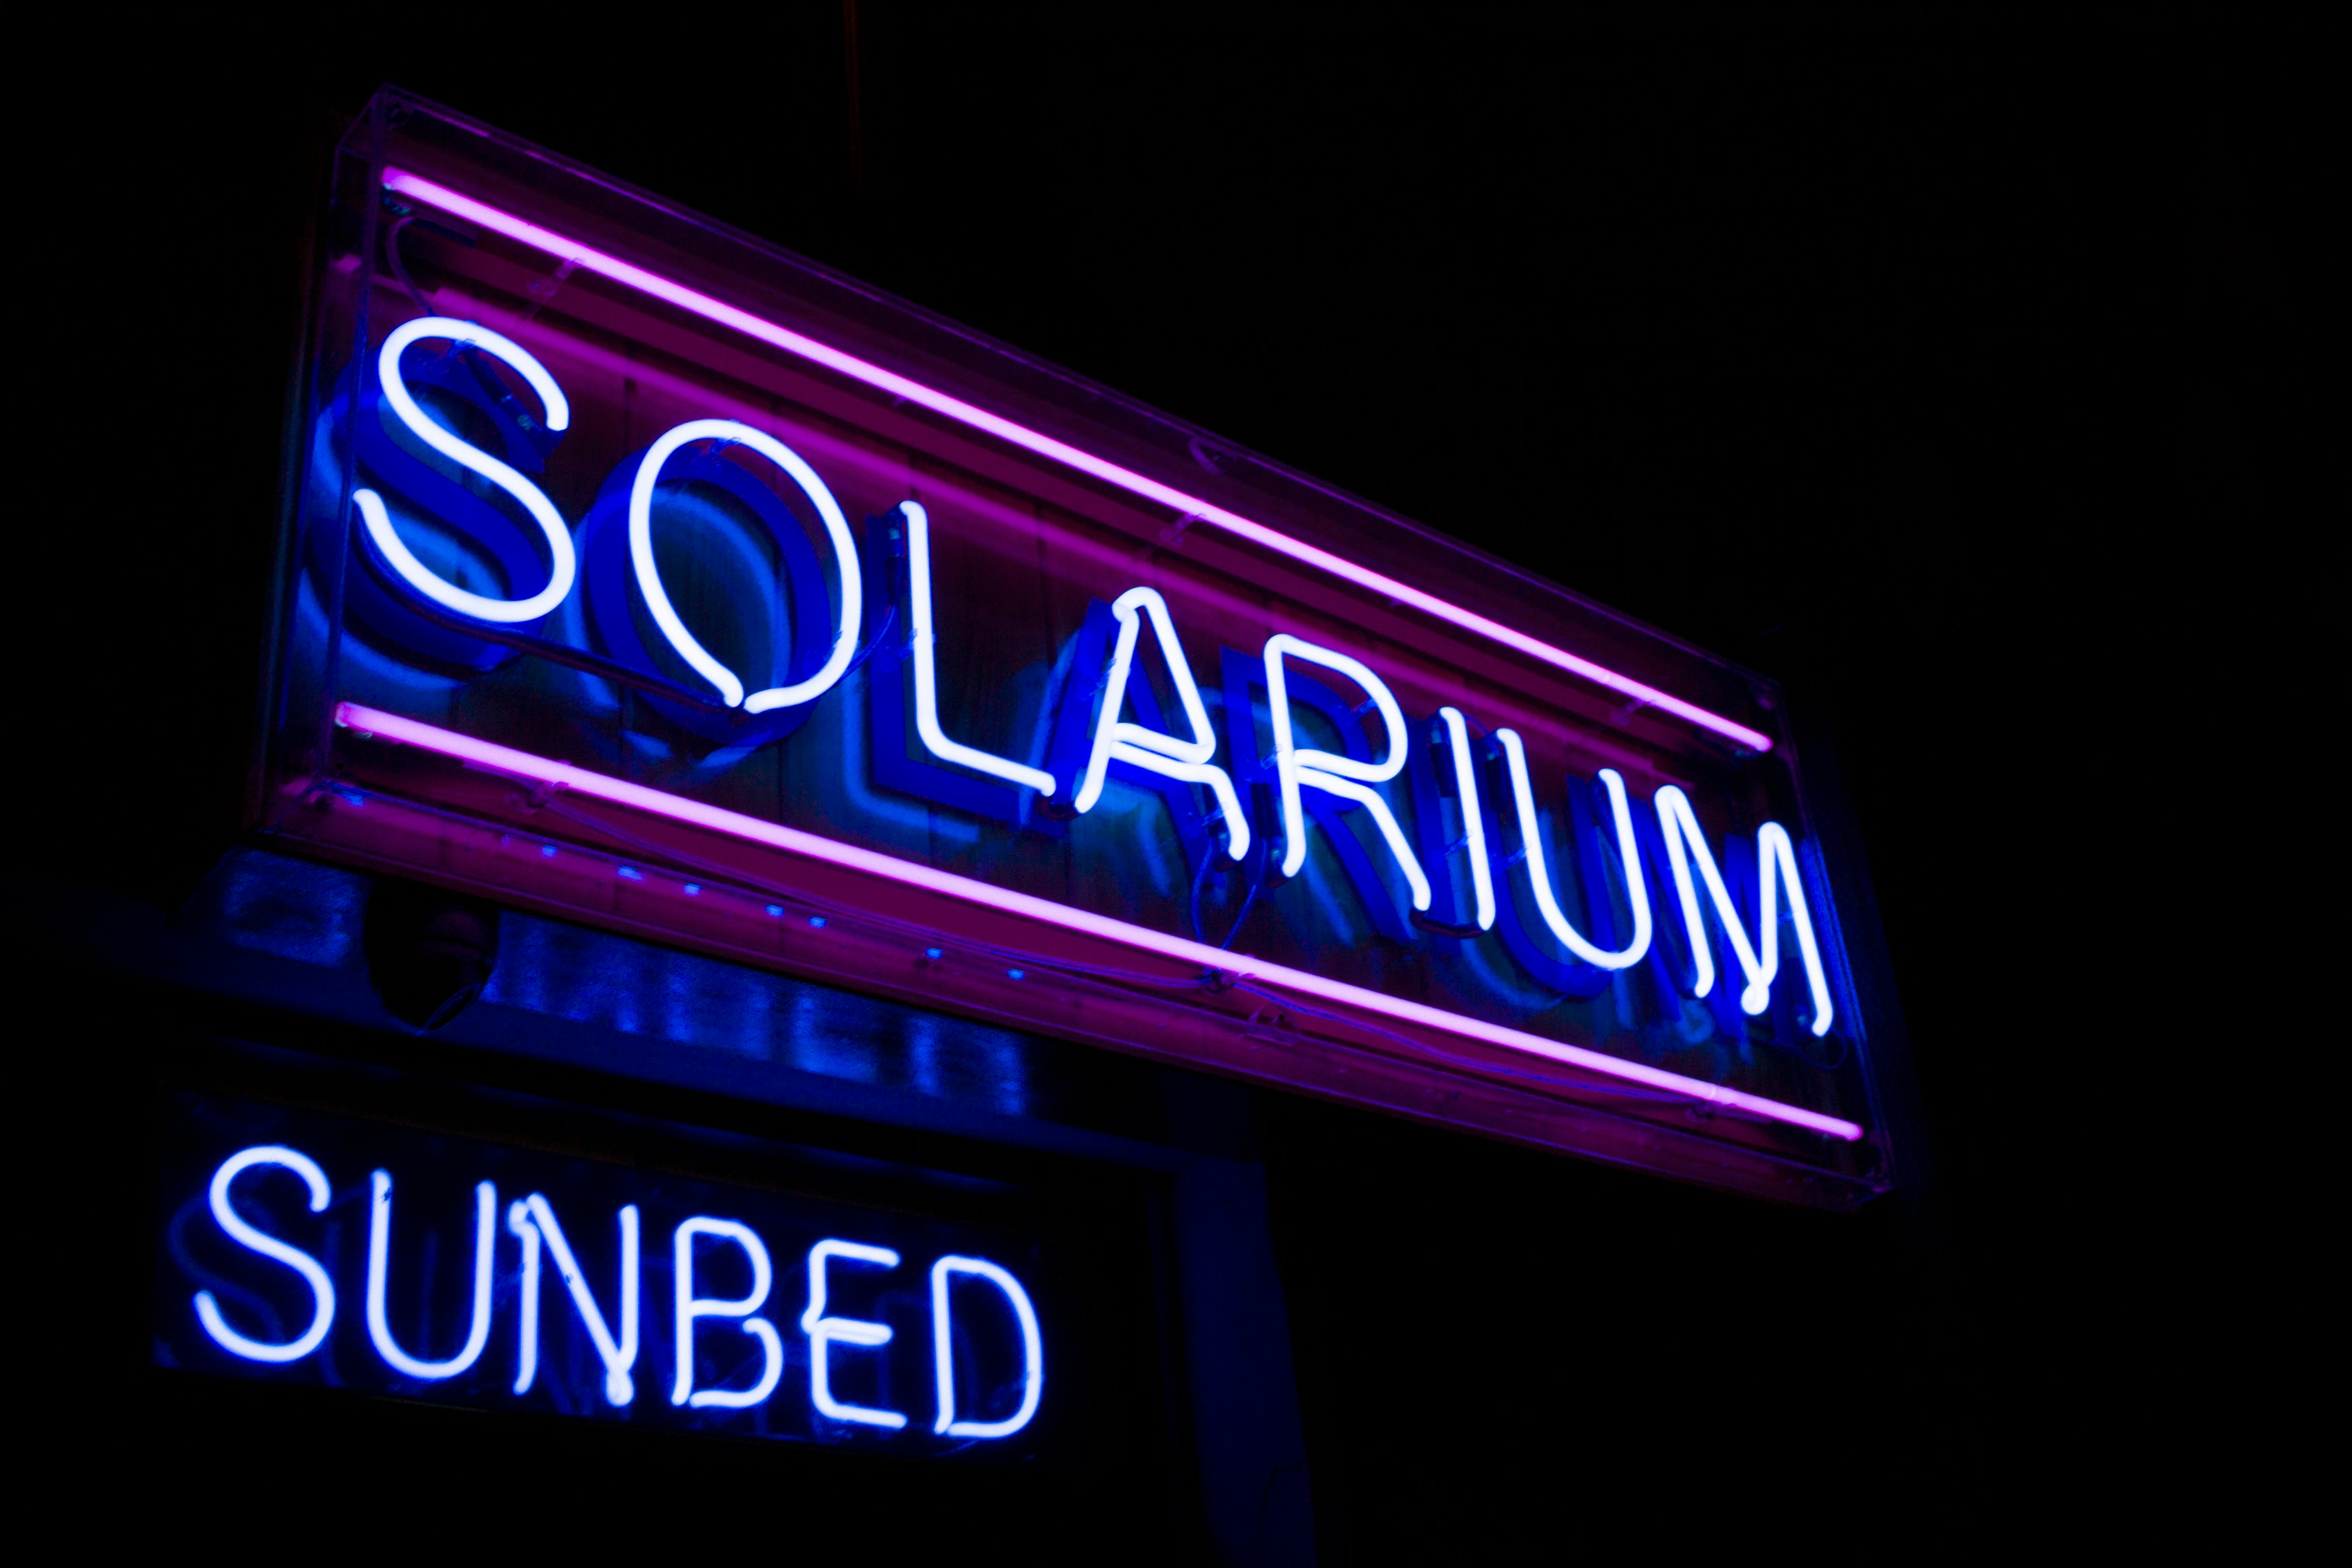 10 minut na solarium - ile to na słońcu? Poznaj prawdę!